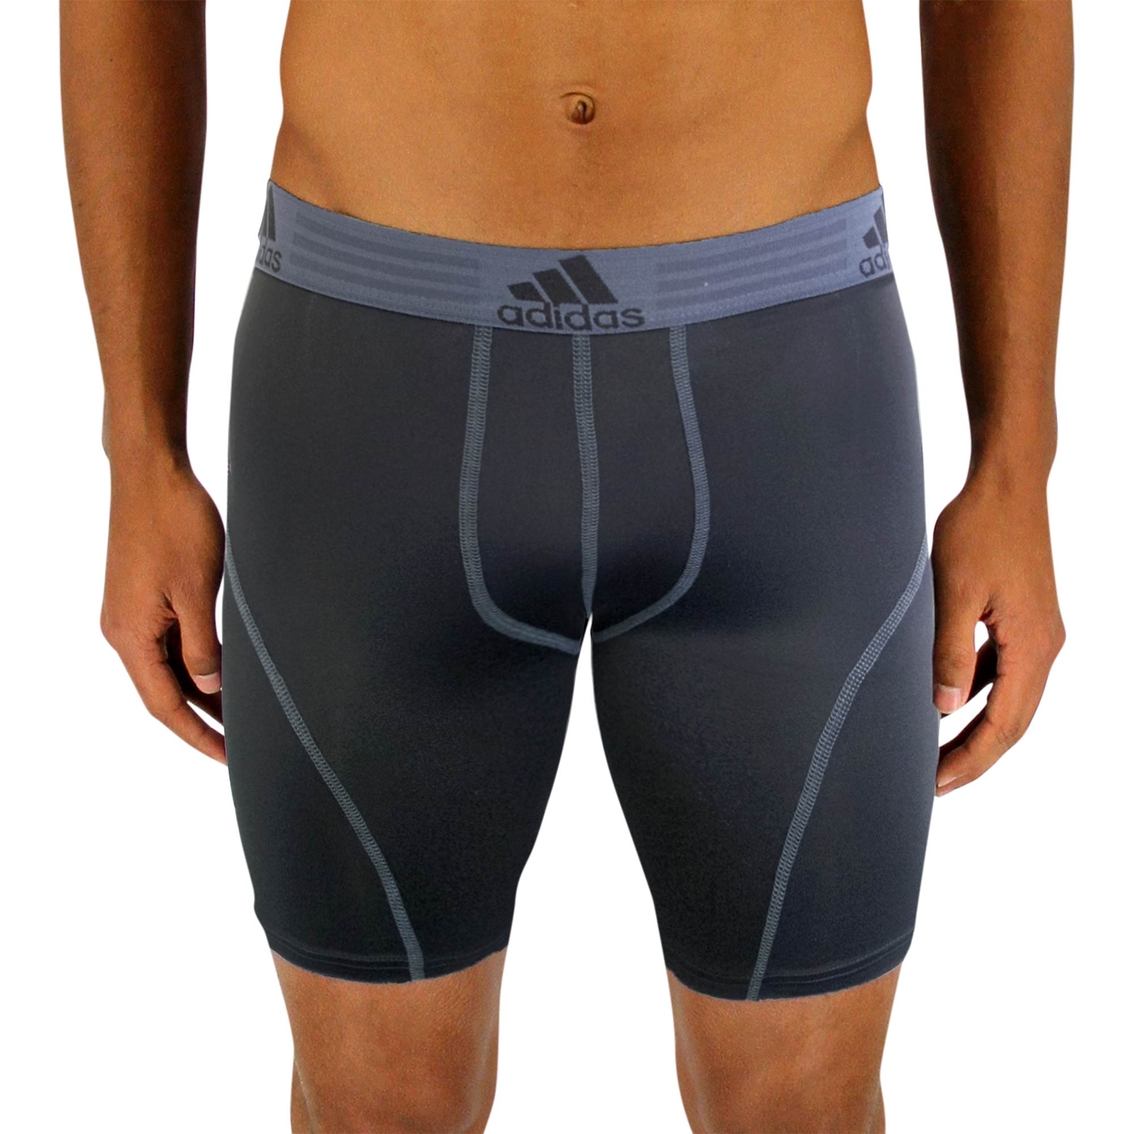 Adidas Sport Performance Climalite Midway Brief 2 Pk. | Underwear ...